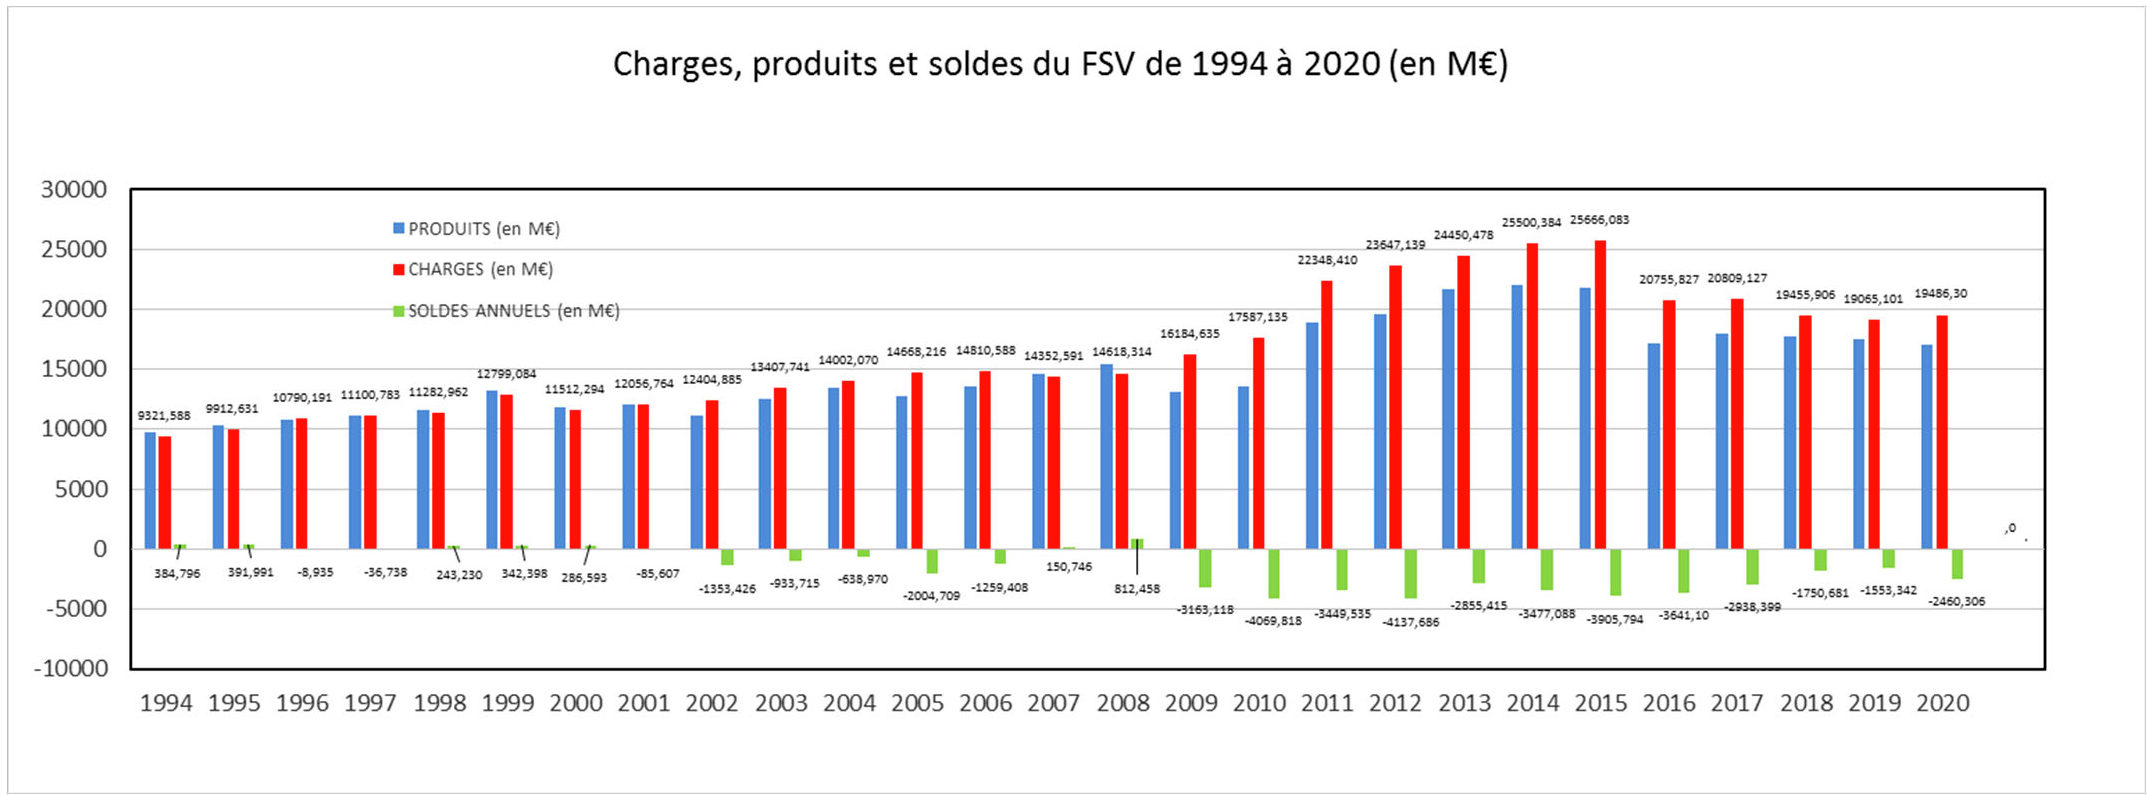 Résultats annuels du FSV de 1994 à 2020